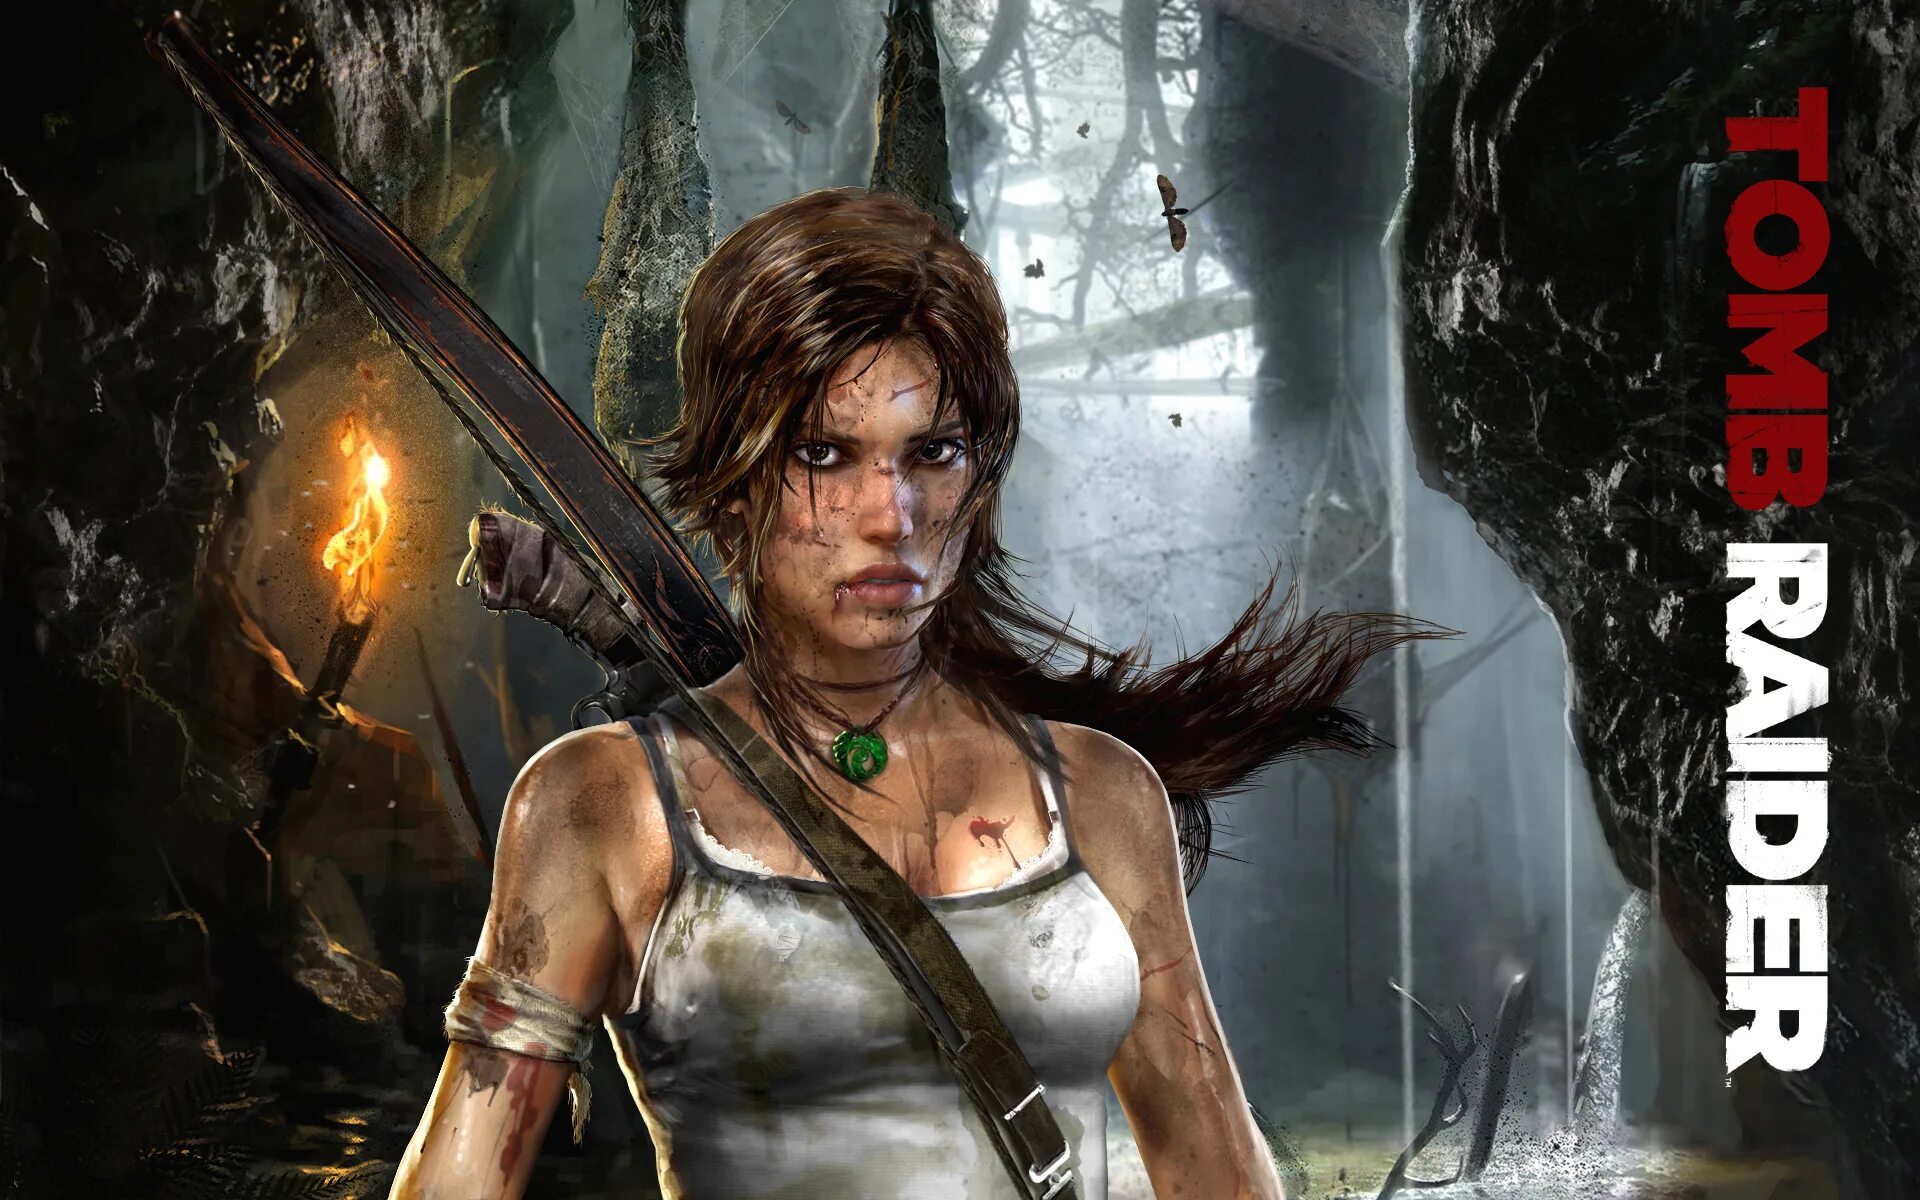 Томб Райдер 2012. Lara Croft Tomb Raider игра 2013. Tomb raider прохождение часть